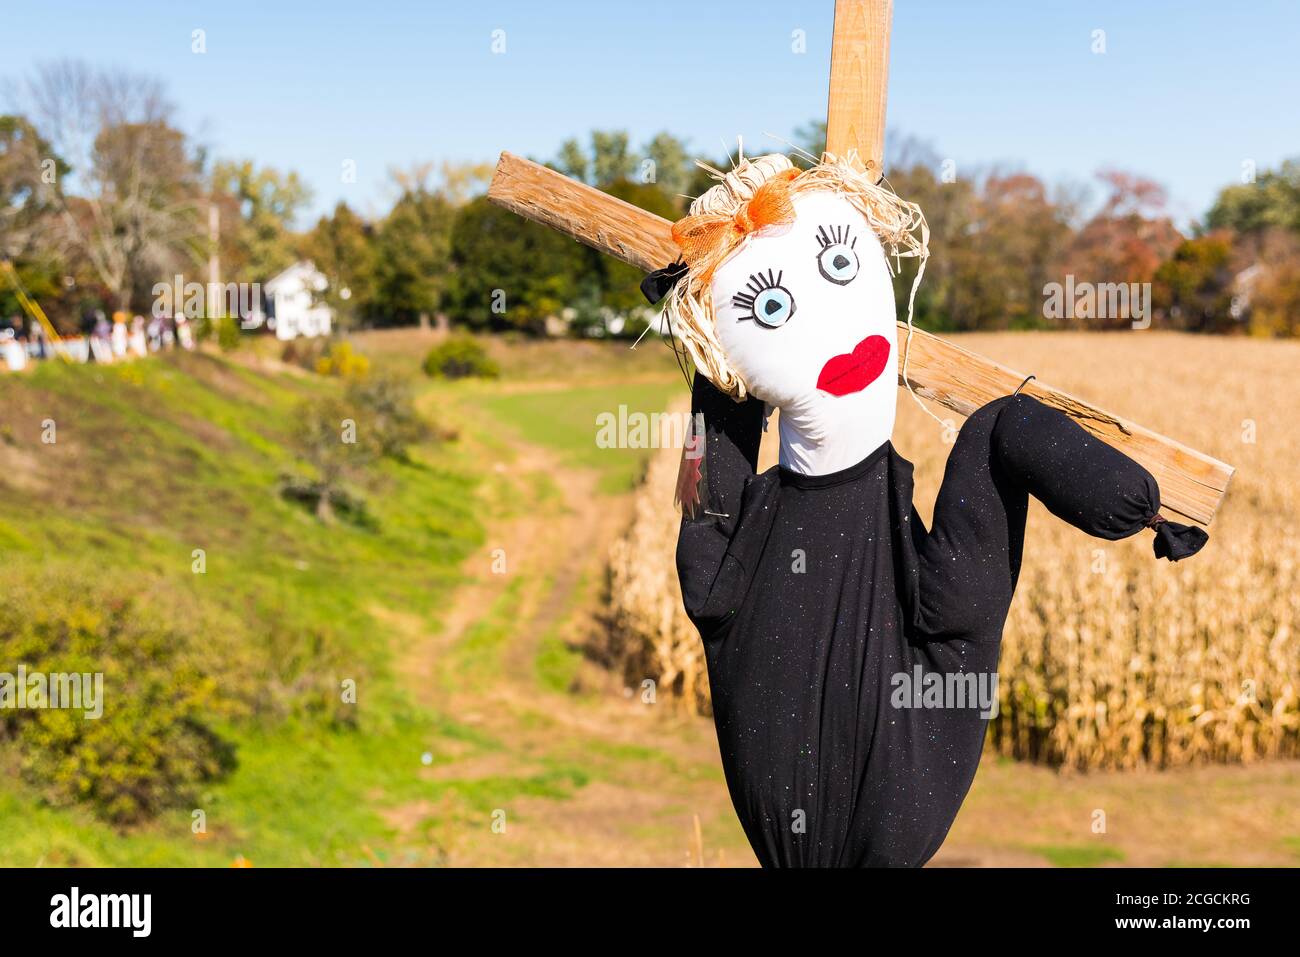 Concurso de diseño de Scarecrow en la granja local para recaudar dinero en beneficio de la Alianza Nacional de Enfermedades Mentales. Foto de stock